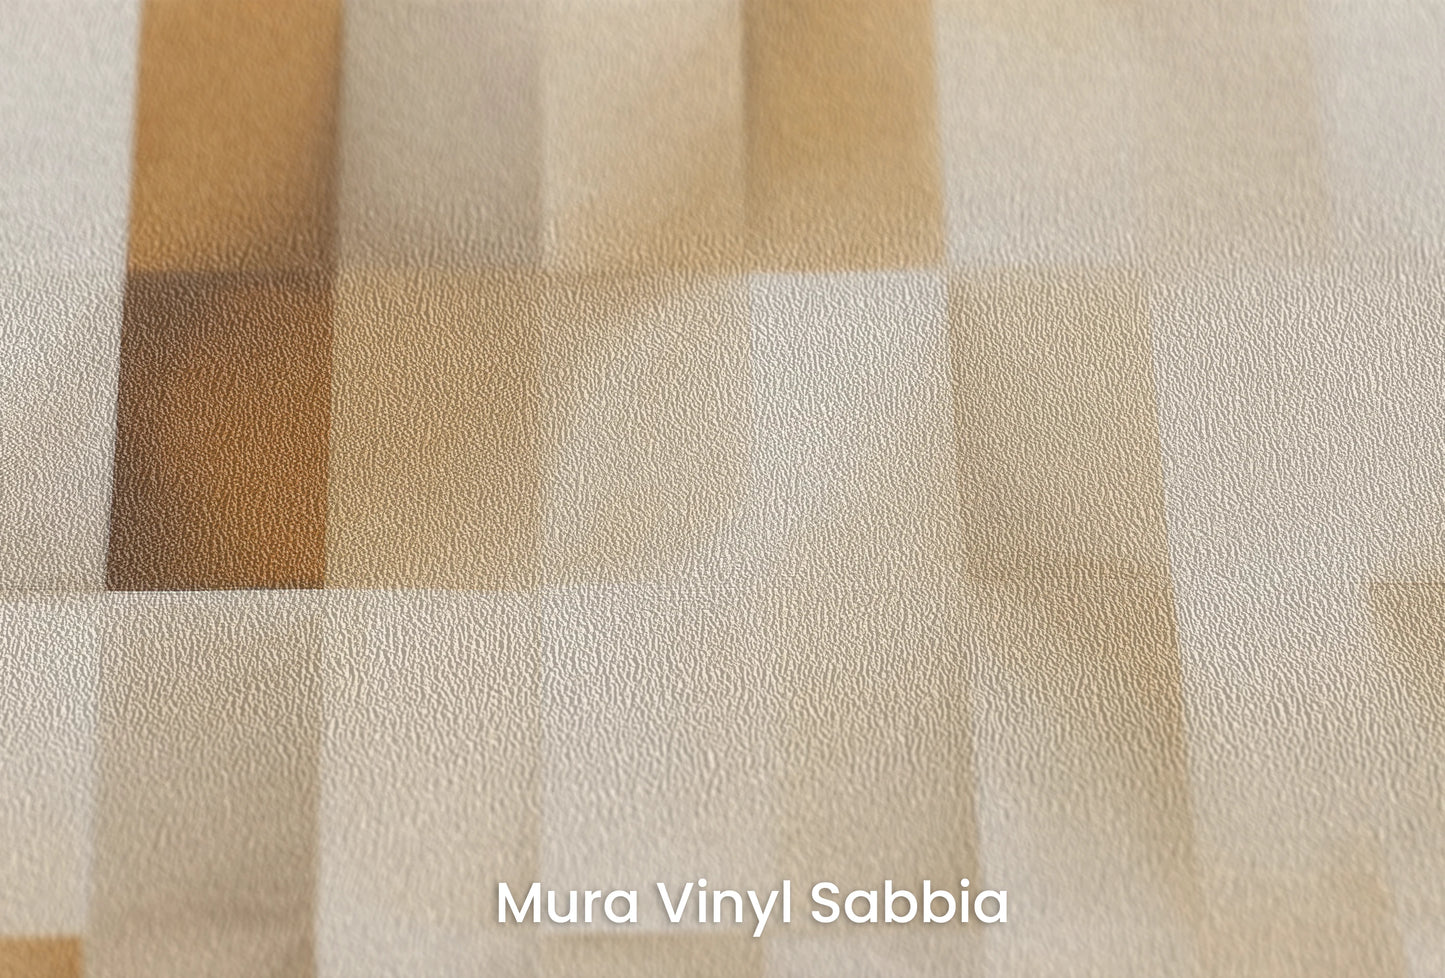 Zbliżenie na artystyczną fototapetę o nazwie Cubic Illusion na podłożu Mura Vinyl Sabbia struktura grubego ziarna piasku.